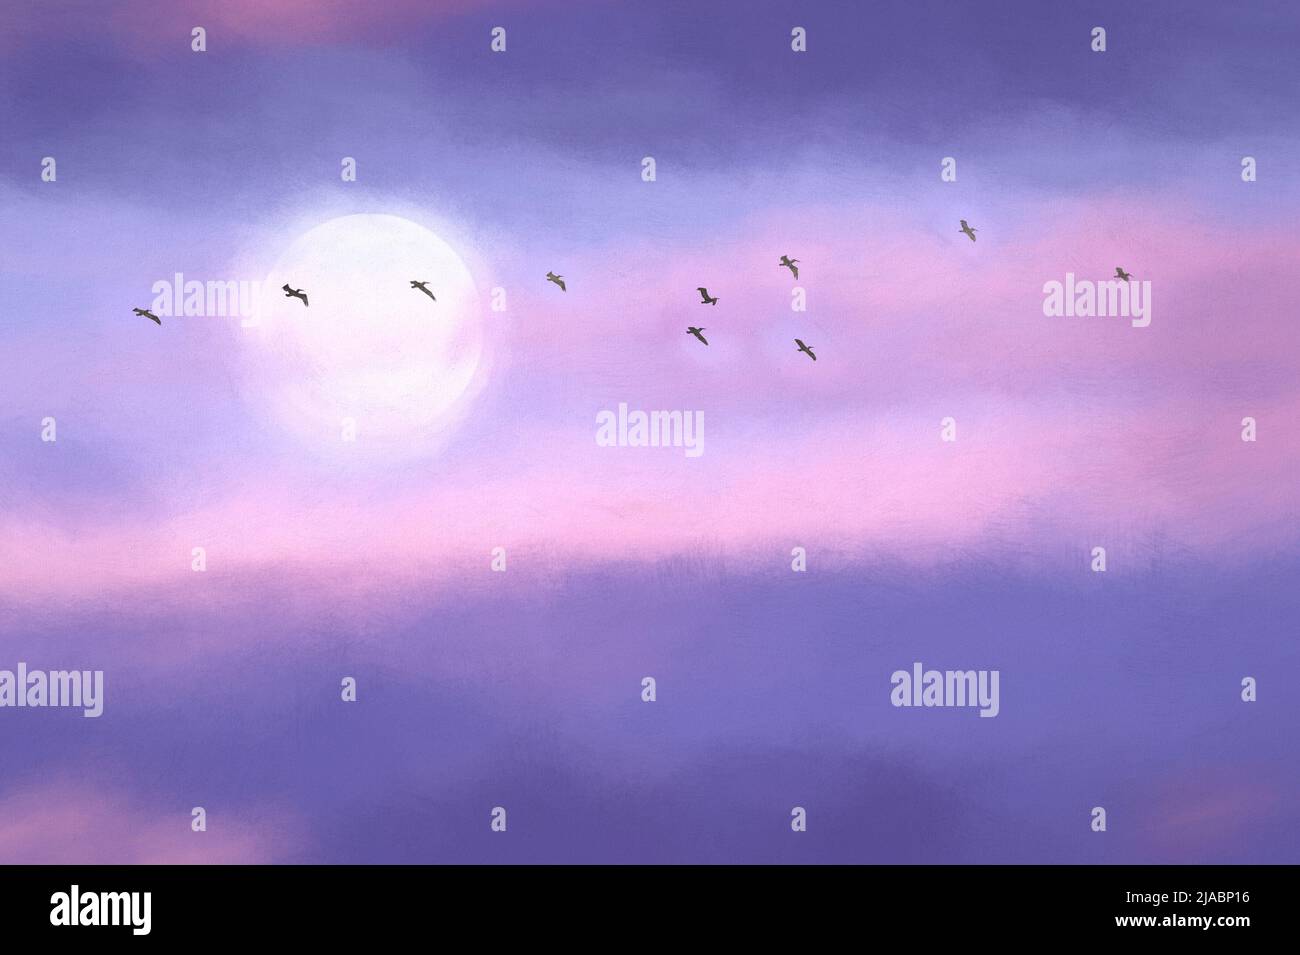 Un gregge di uccelli sta volando attraverso il cielo della notte della luna in formato di pittura grafica. Foto Stock